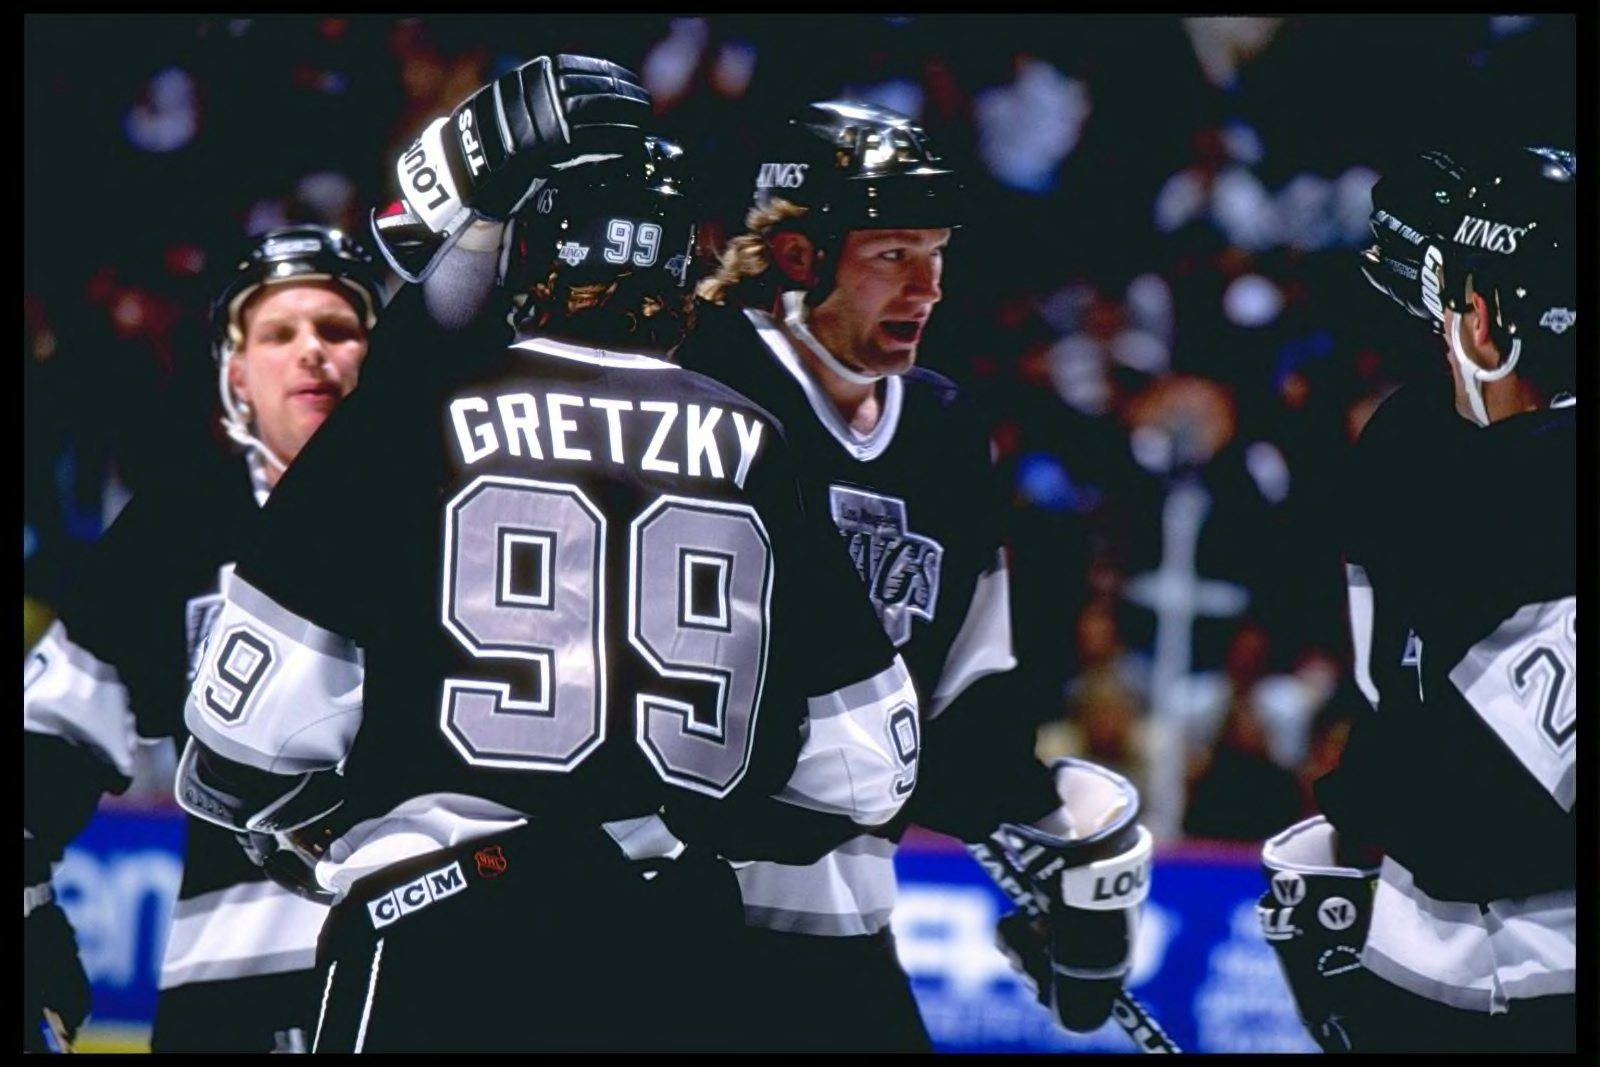 Wayne Gretzky, Los Angeles Kings  La kings hockey, Kings hockey